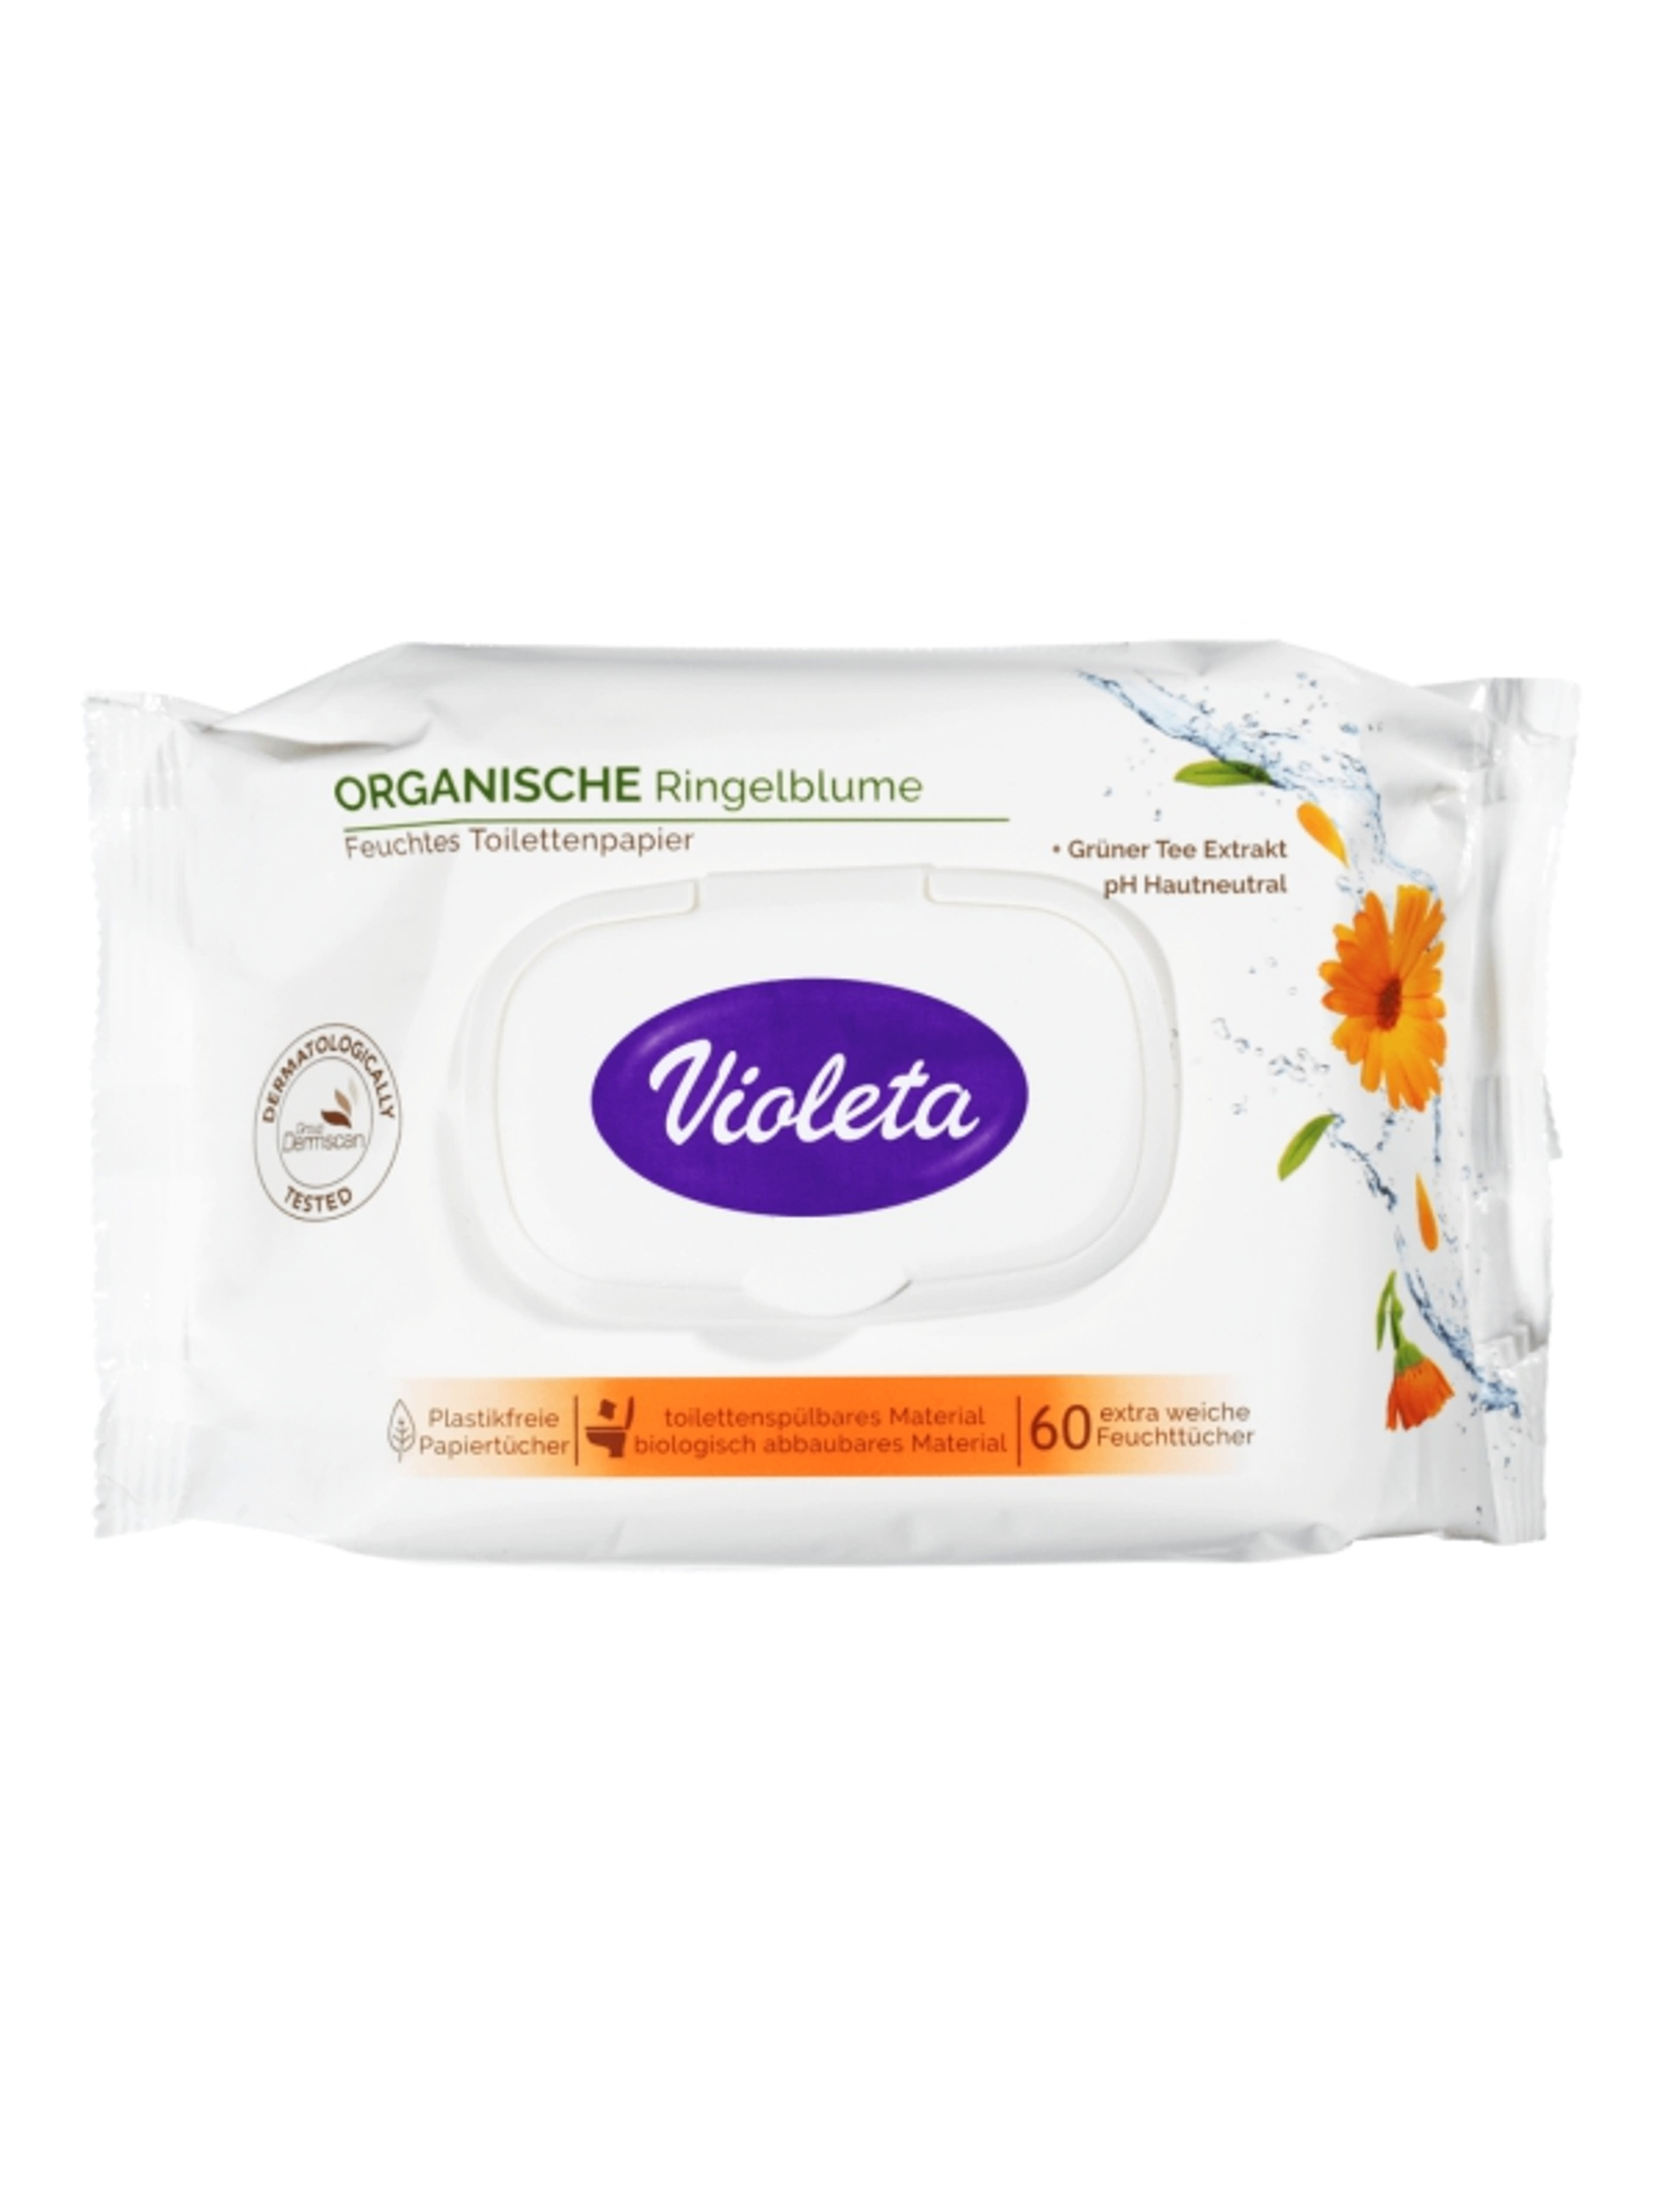 Violeta nedves sensitív toalettpapír - 60 db